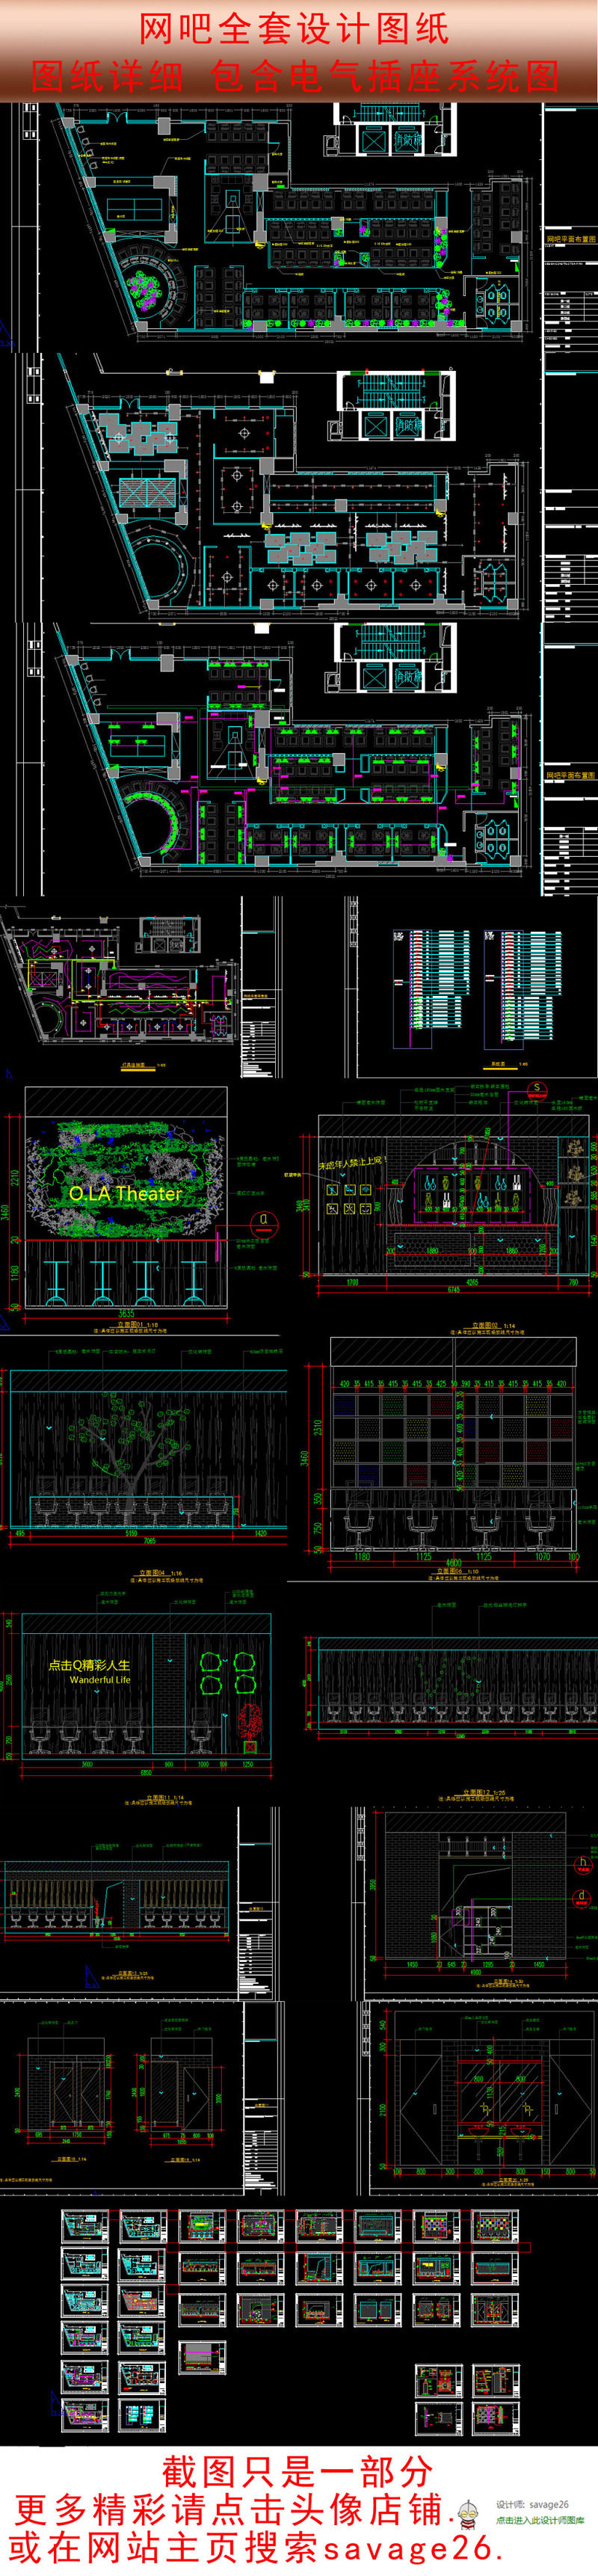 原创网吧CAD设计装修图（含强弱电）-版权可商用